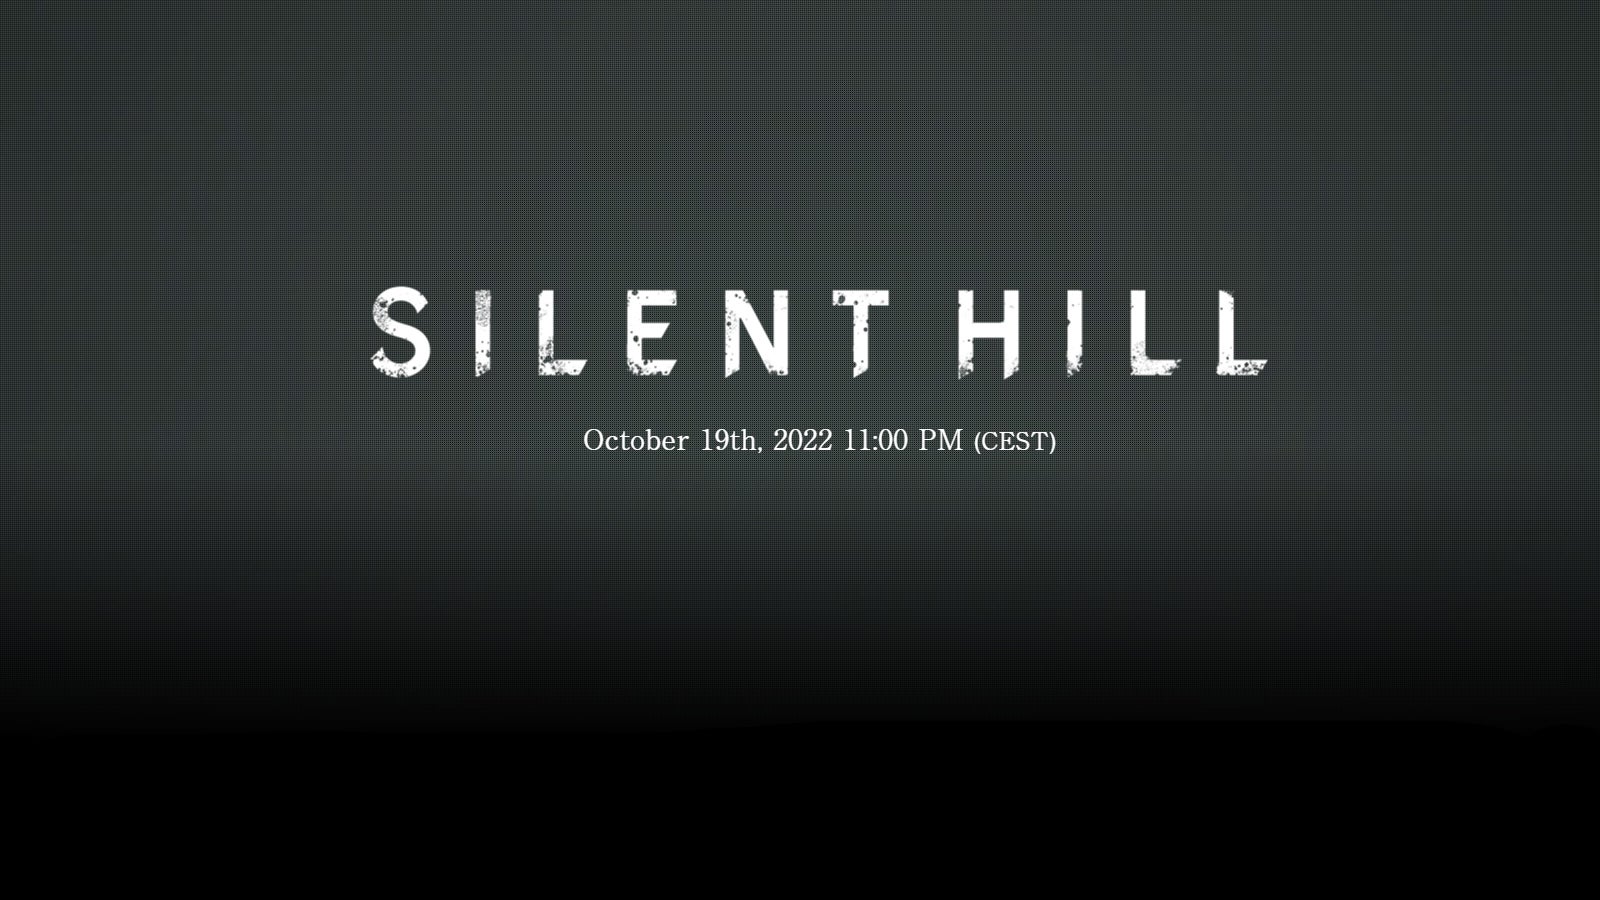 Immagine del sito web teaser di Silent Hill.